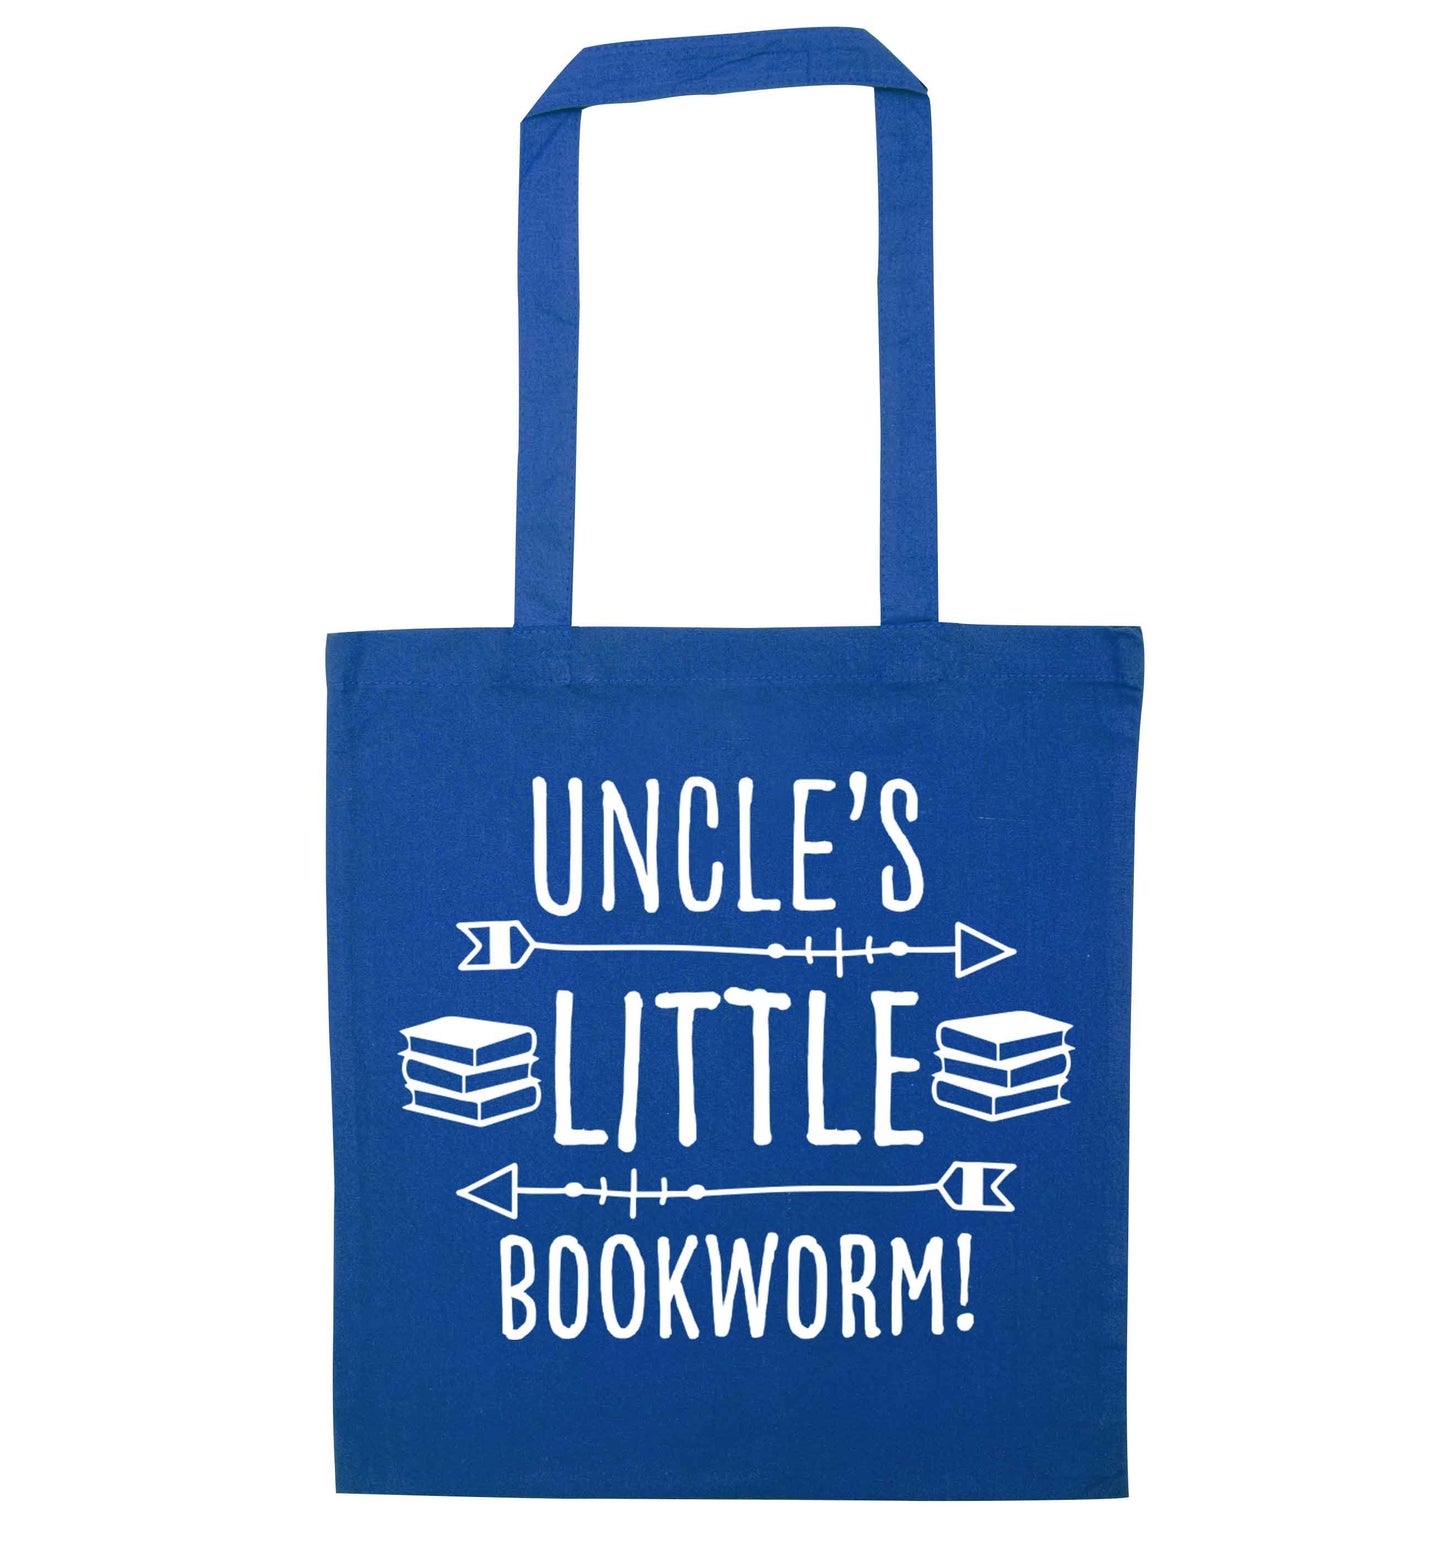 Uncle's little bookworm blue tote bag